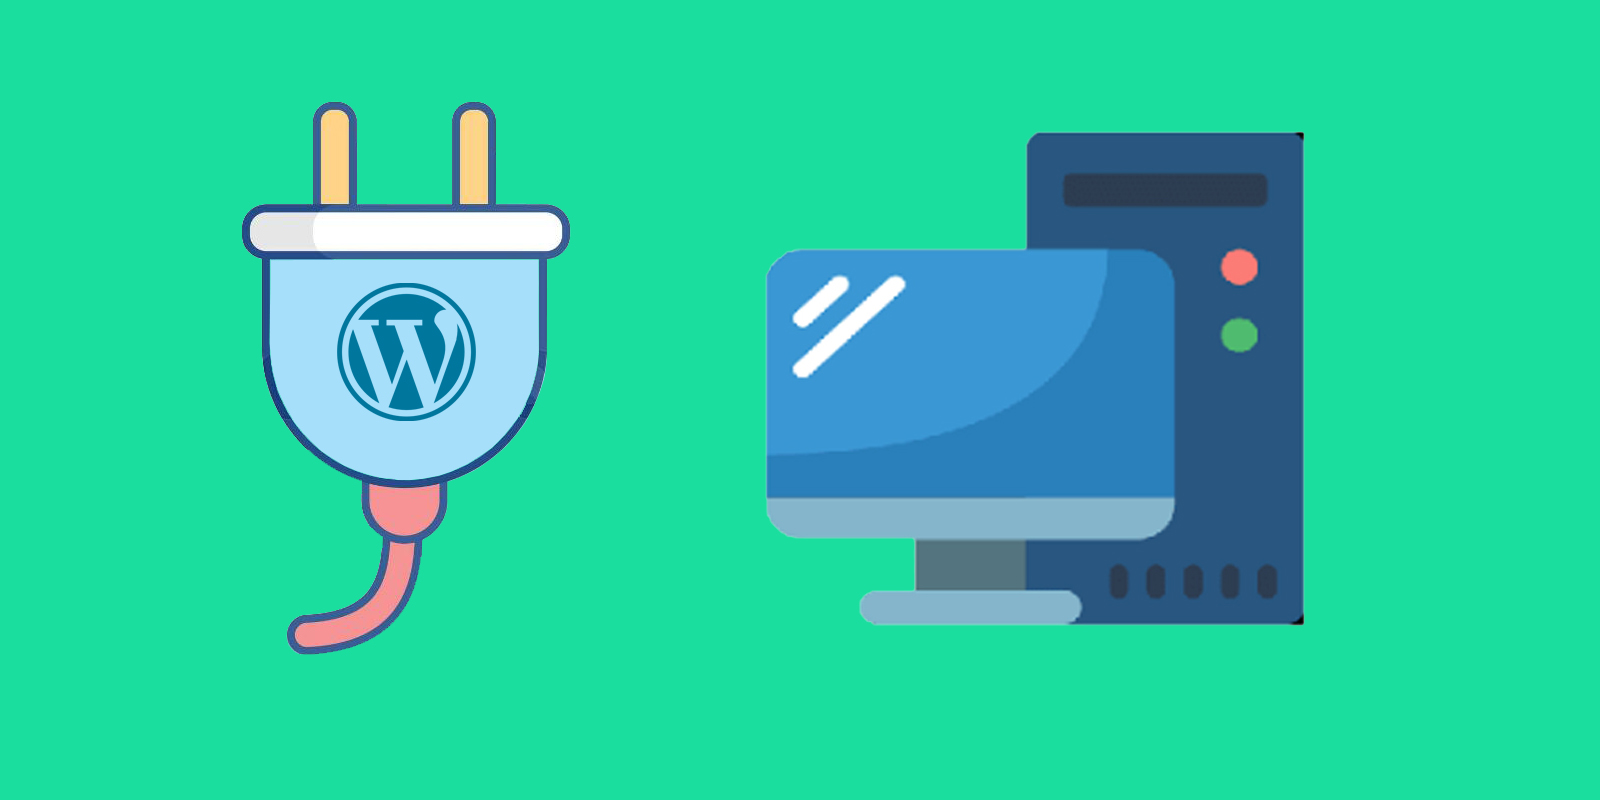 How to create a WordPress Plugin?